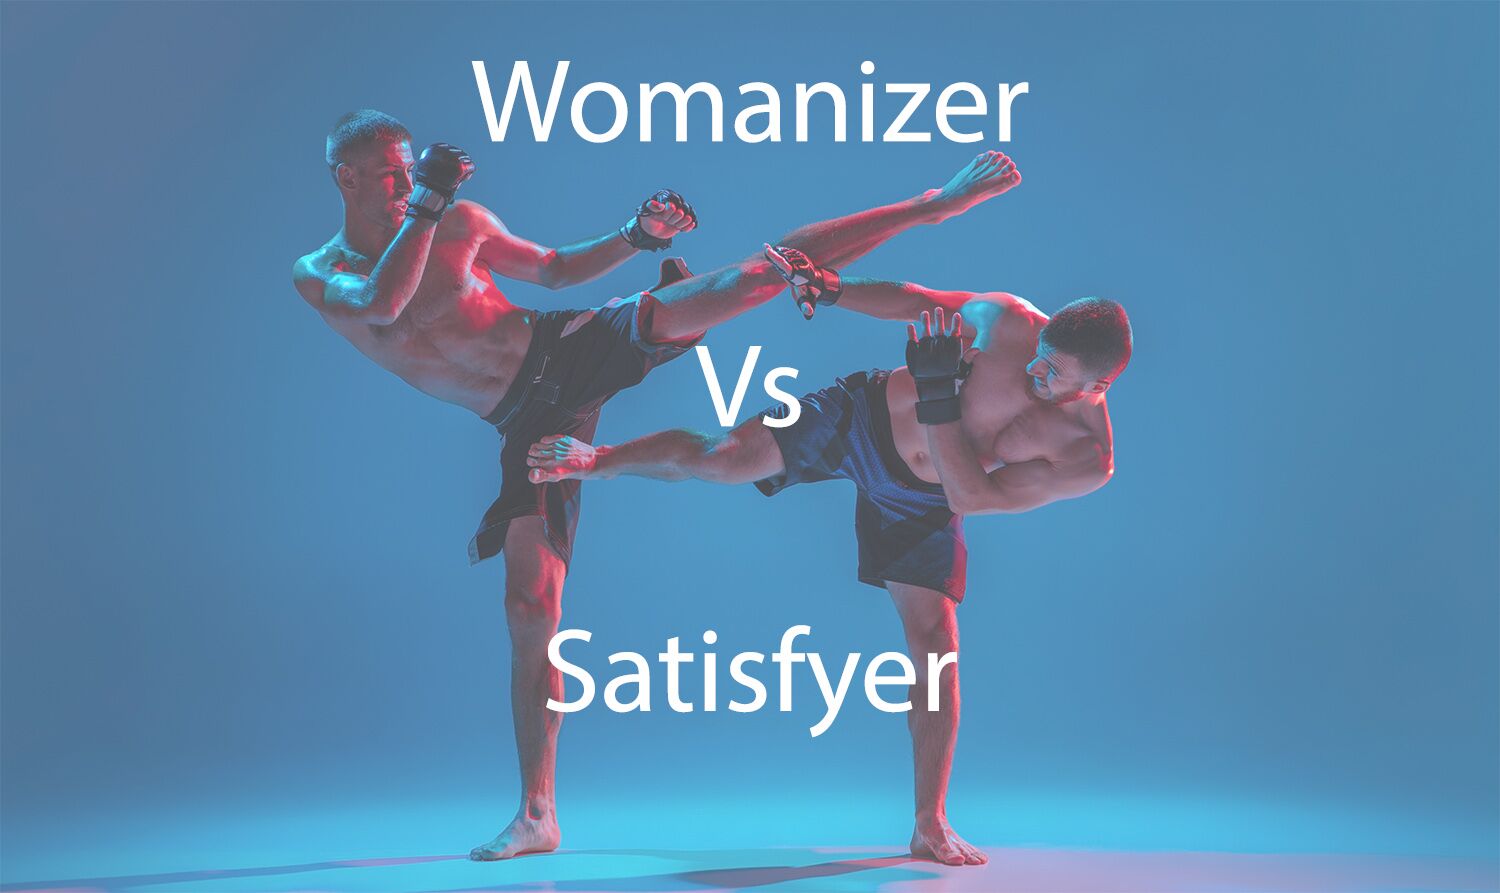 Womanizer Vs Satisfyer